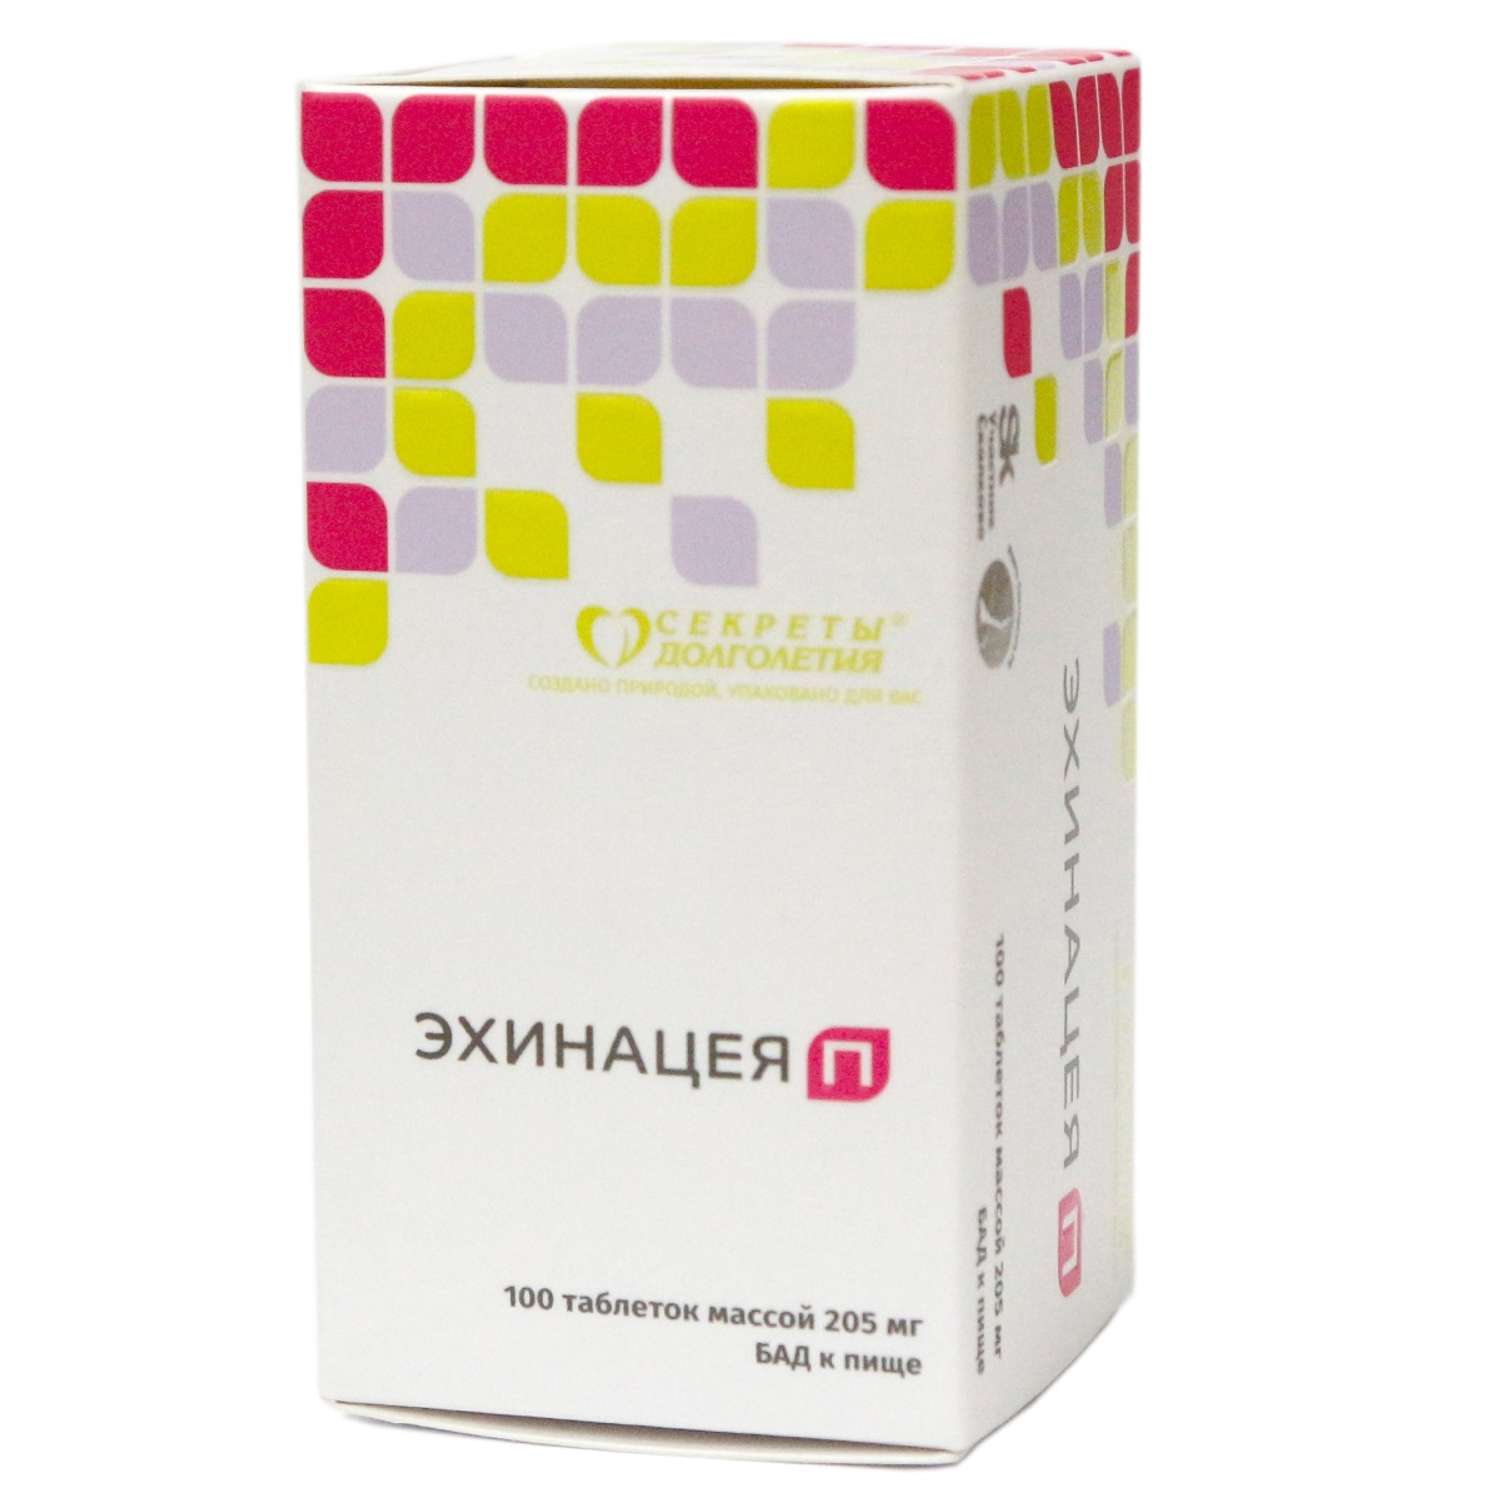 Витаминный комплекс Парафарм Эхинацея П. 2 упаковки по 100 таблеток - фото 4